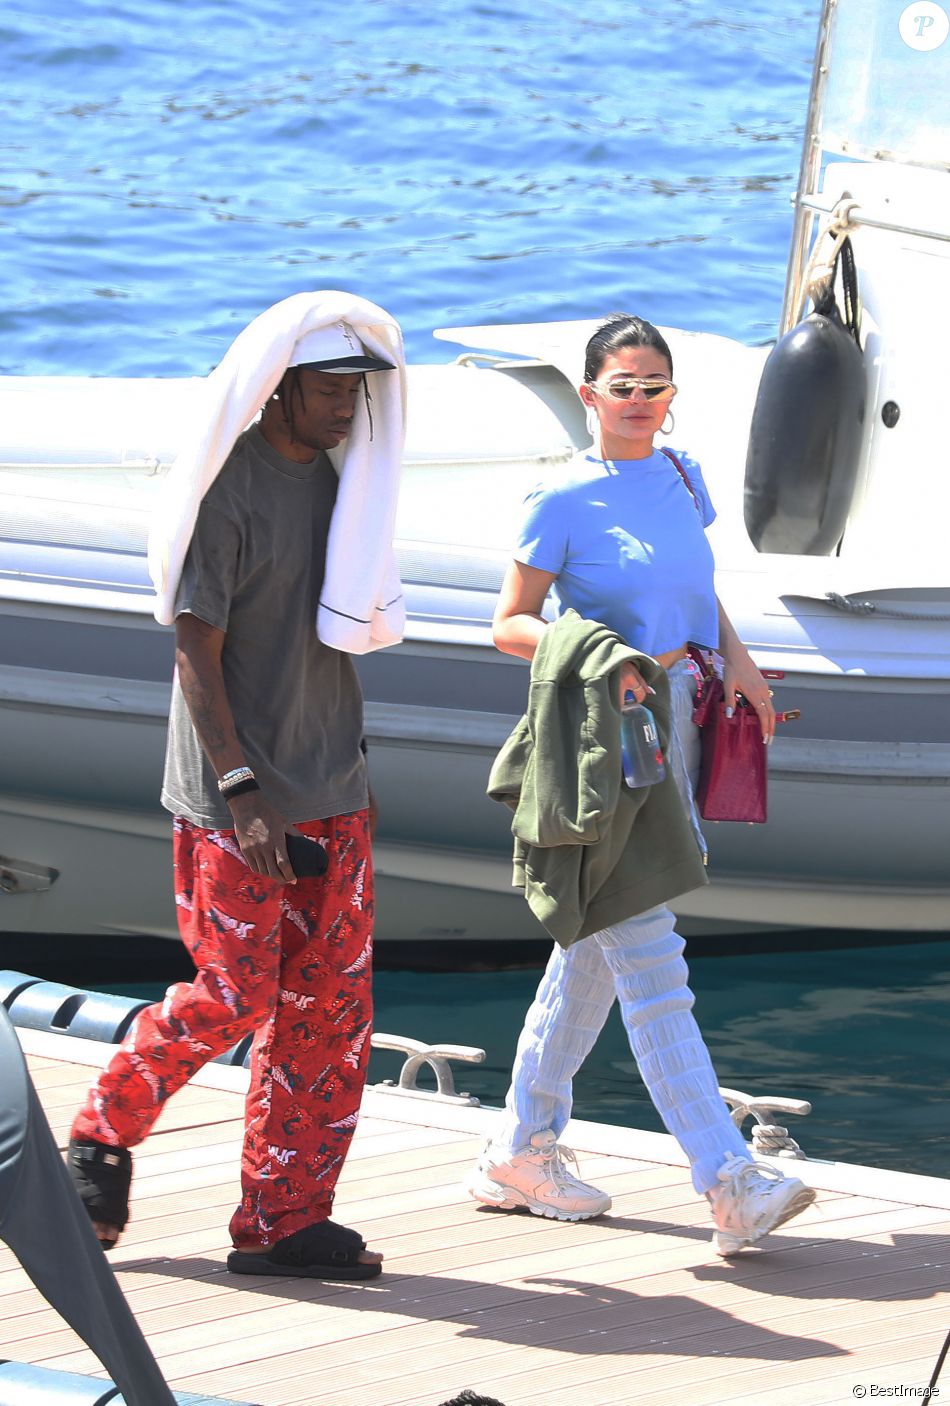 Kylie Jenner, son compagnon Travis Scott en vacances à Monaco, le 16 août 2019. Kylie et Travis essaient de se cacher des photographes.